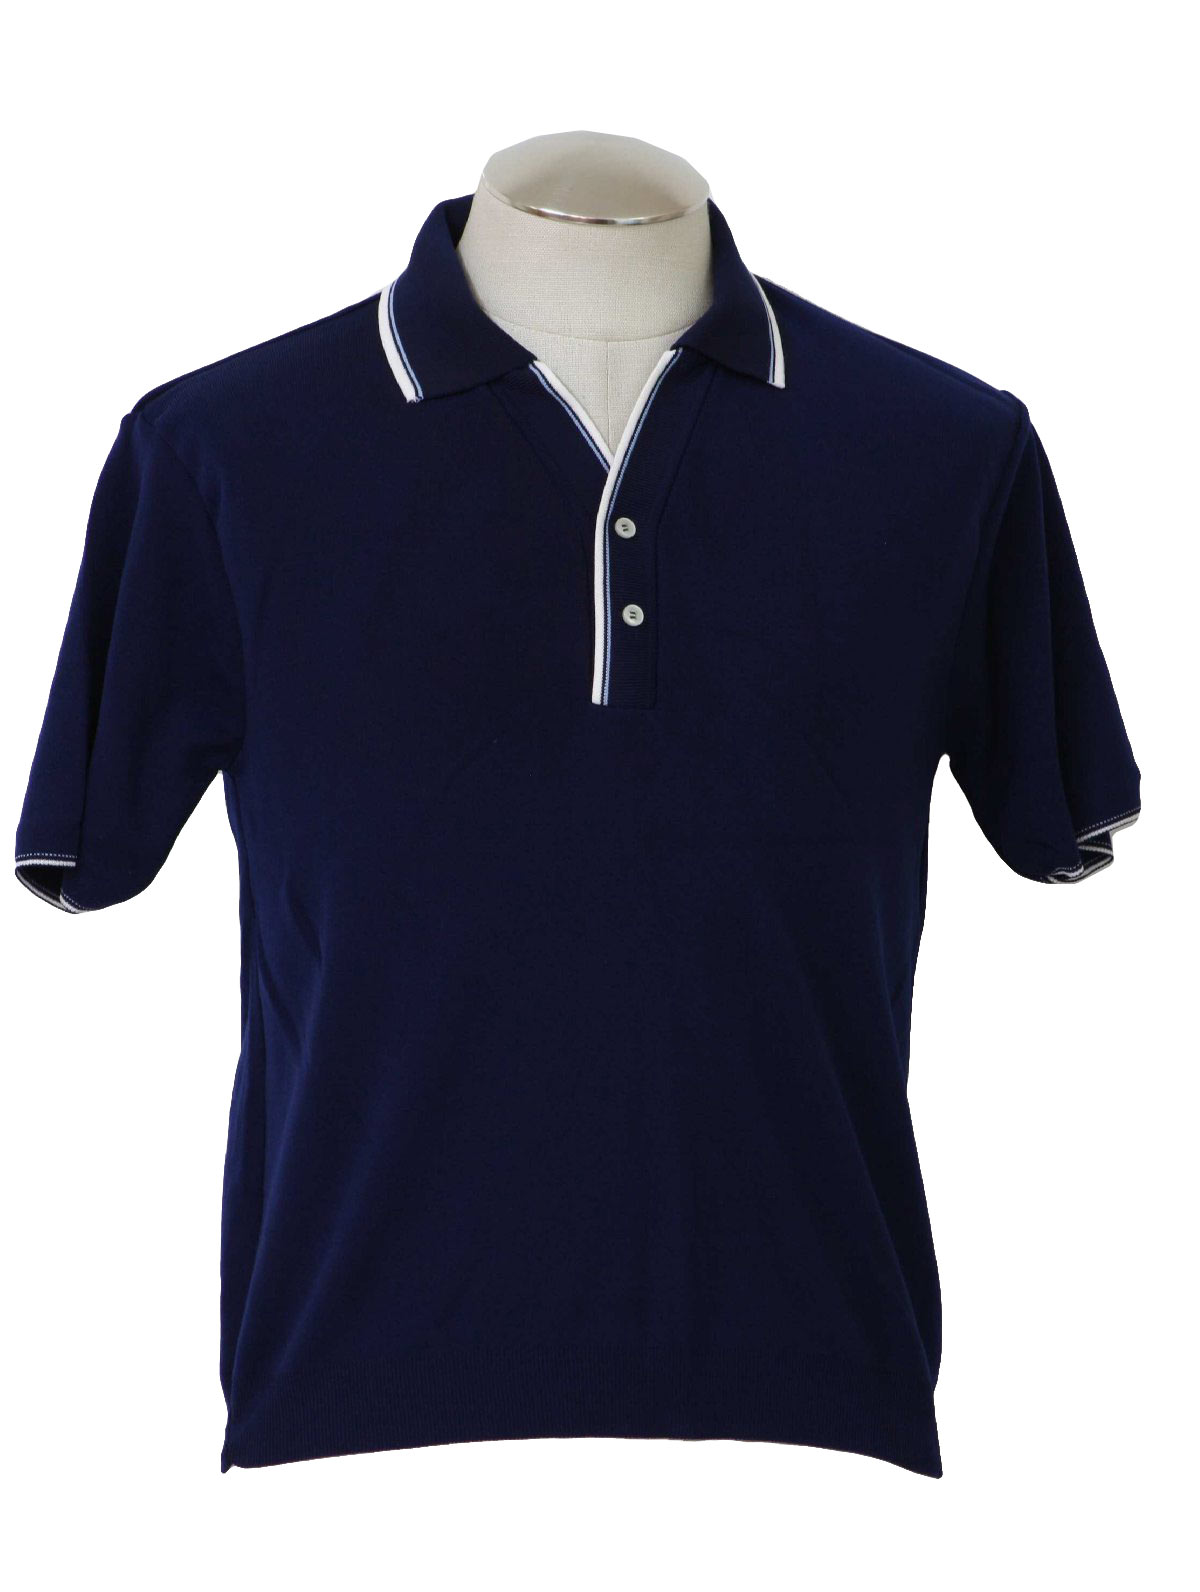 Vintage Fairmont Seventies Knit Shirt: 70s -Fairmont- Mens navy blue ...